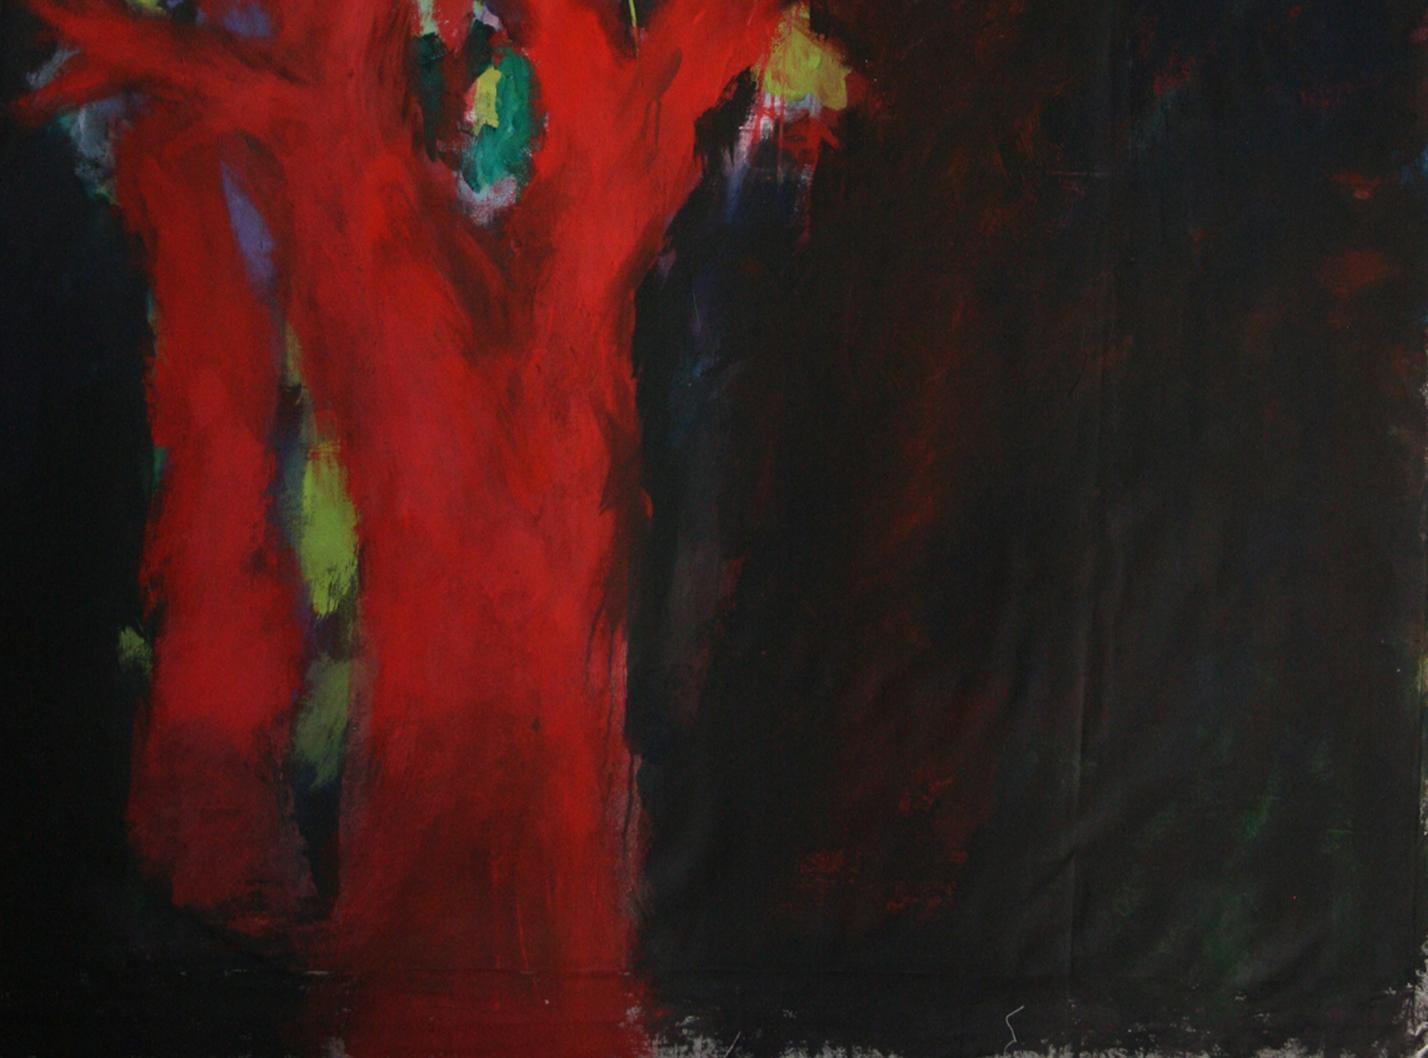 Peinture d'artiste française « Arbre » de Nathalie Fontenoy, 7 arbres sur toile - Painting de Nathalie Fontenoy 